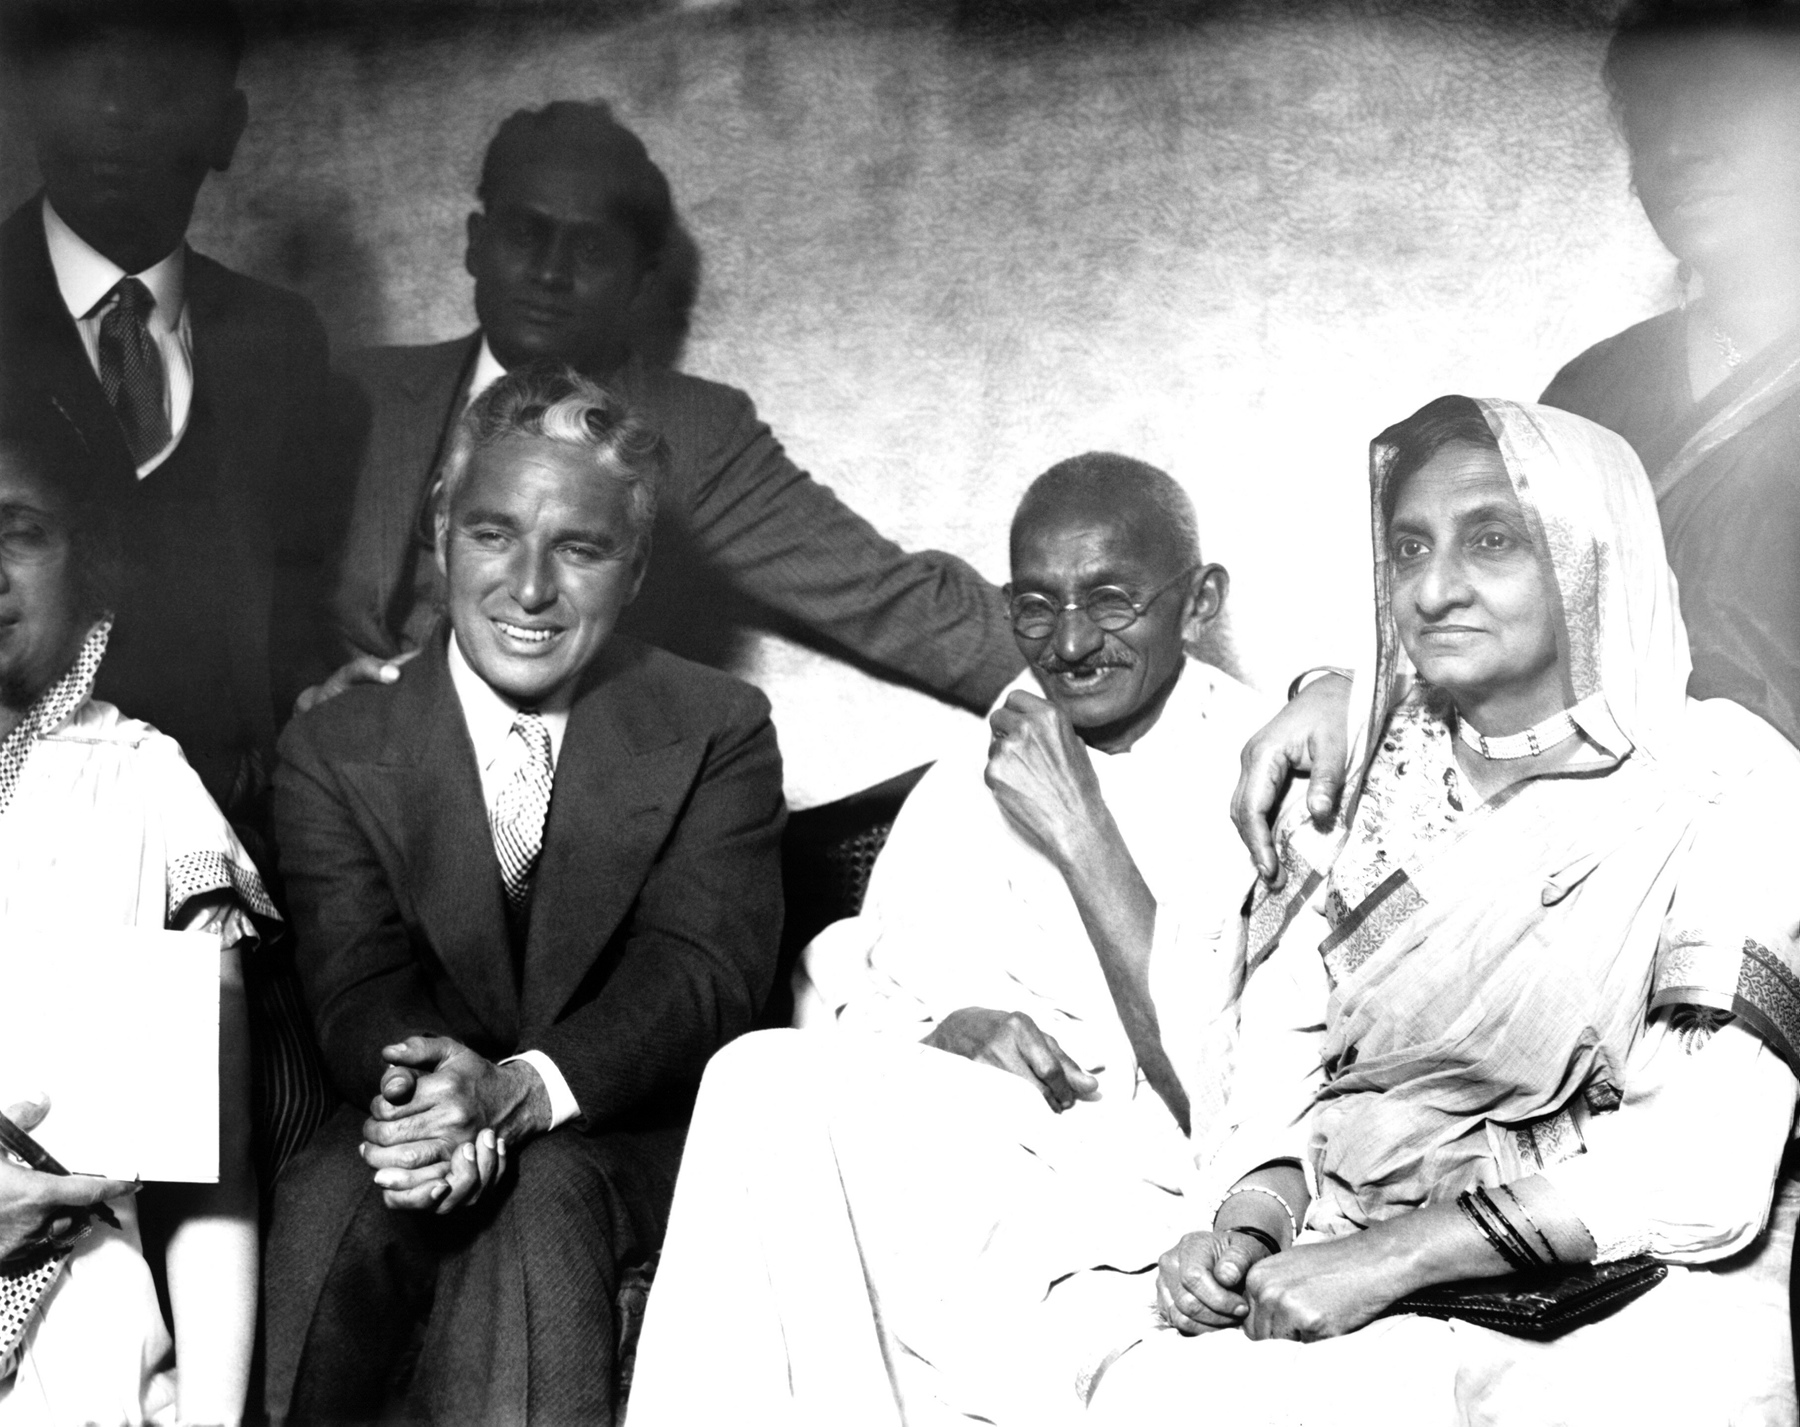 Spotkanie Charliego Chaplina z Mahatmą Gandhim podczas podróży aktora do Indii, ok. 1930 r.